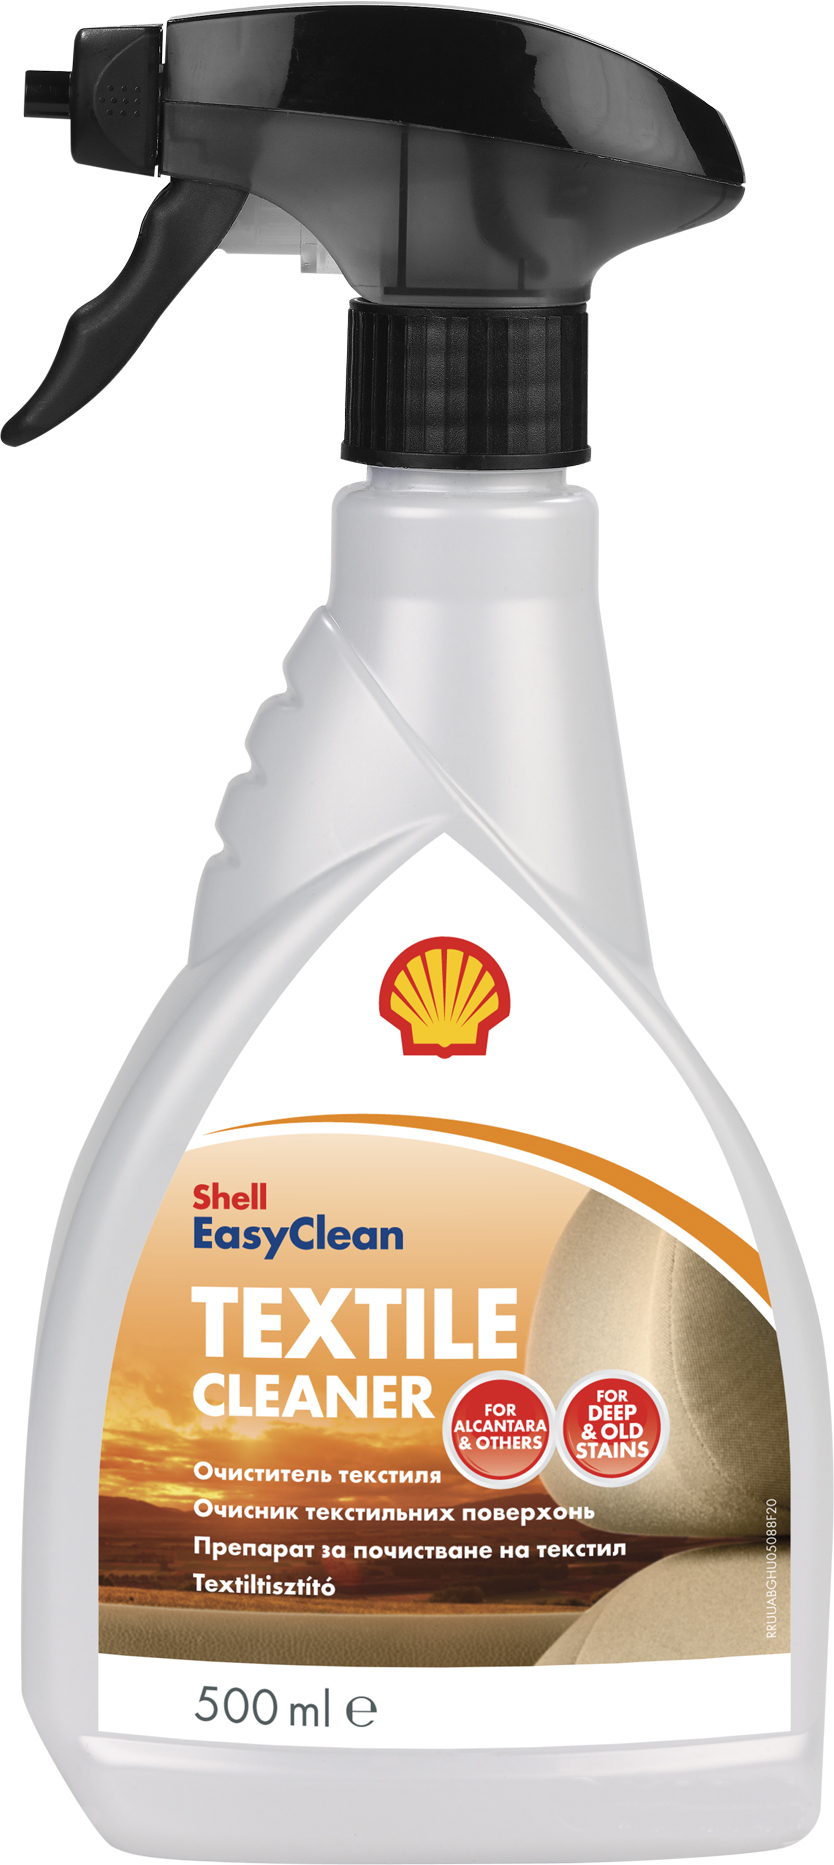 Shell Textile Сleaner Средство по уходу за тканевыми поверхностями салона